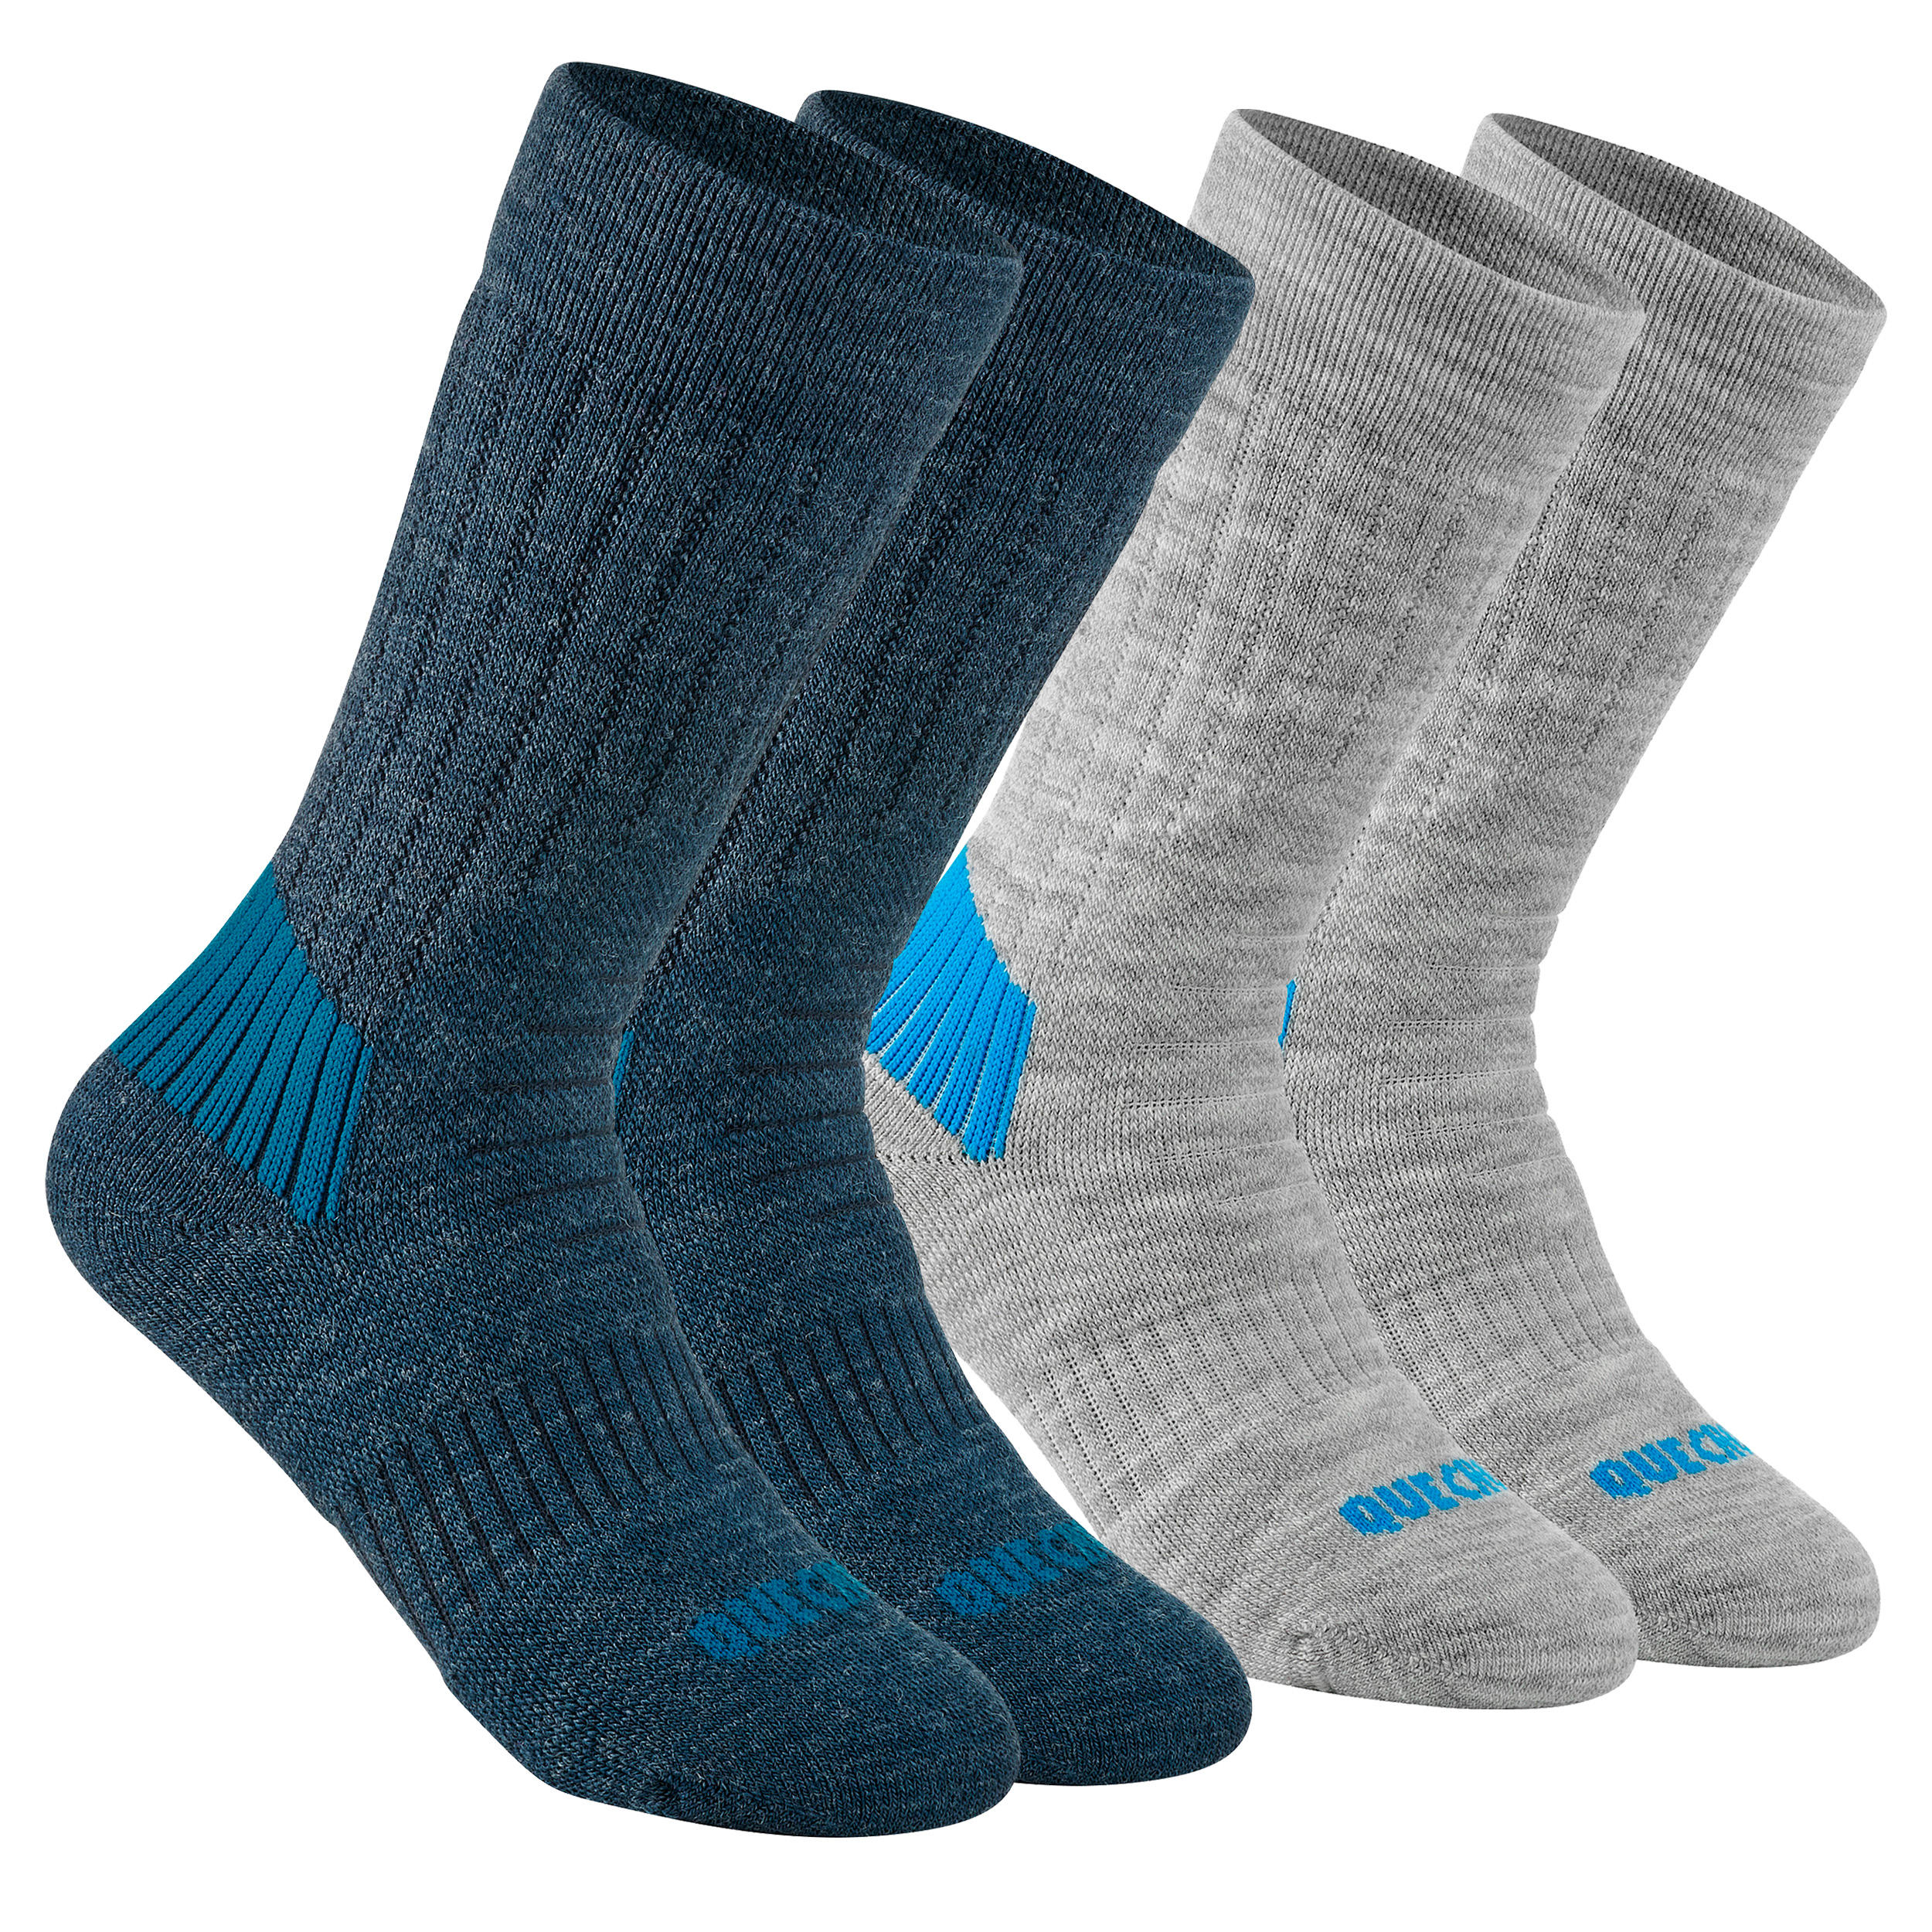 QUECHUA Children's warm hiking socks - SH100 WARM MID - x2 pairs